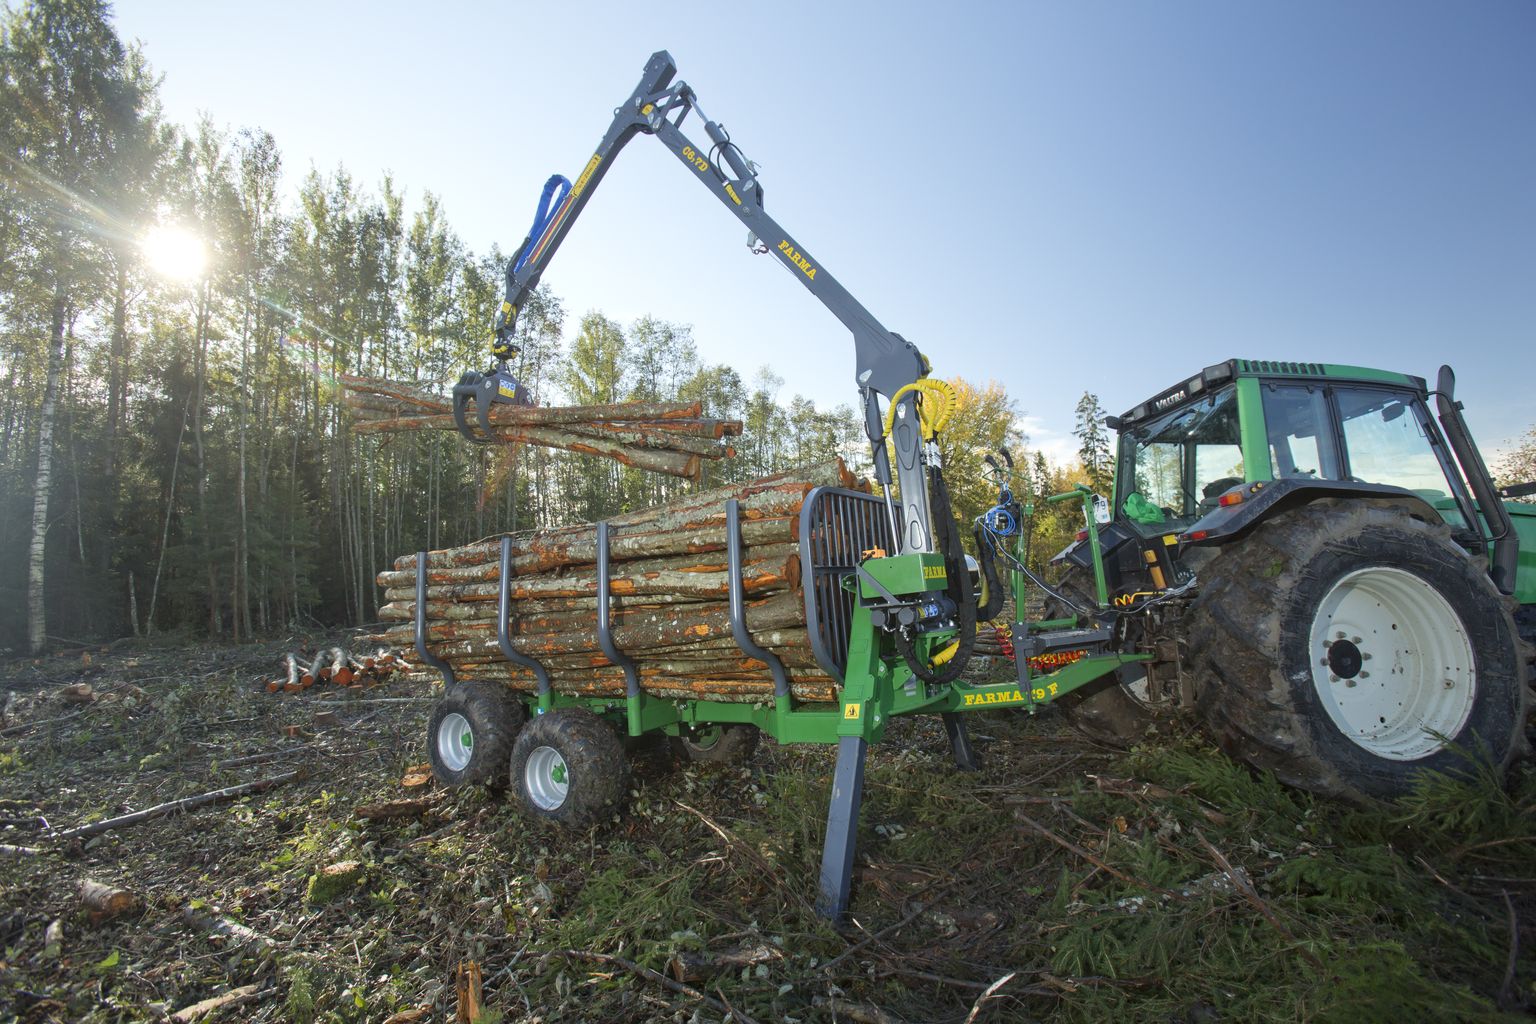 Farma uus tõstukiga varustatud metsaveohaagis, mis mõeldud üpris intensiivseks metsatööks ja millele hüdraulika abil pöörduv tiisel annab hea manööverdamisvõime.